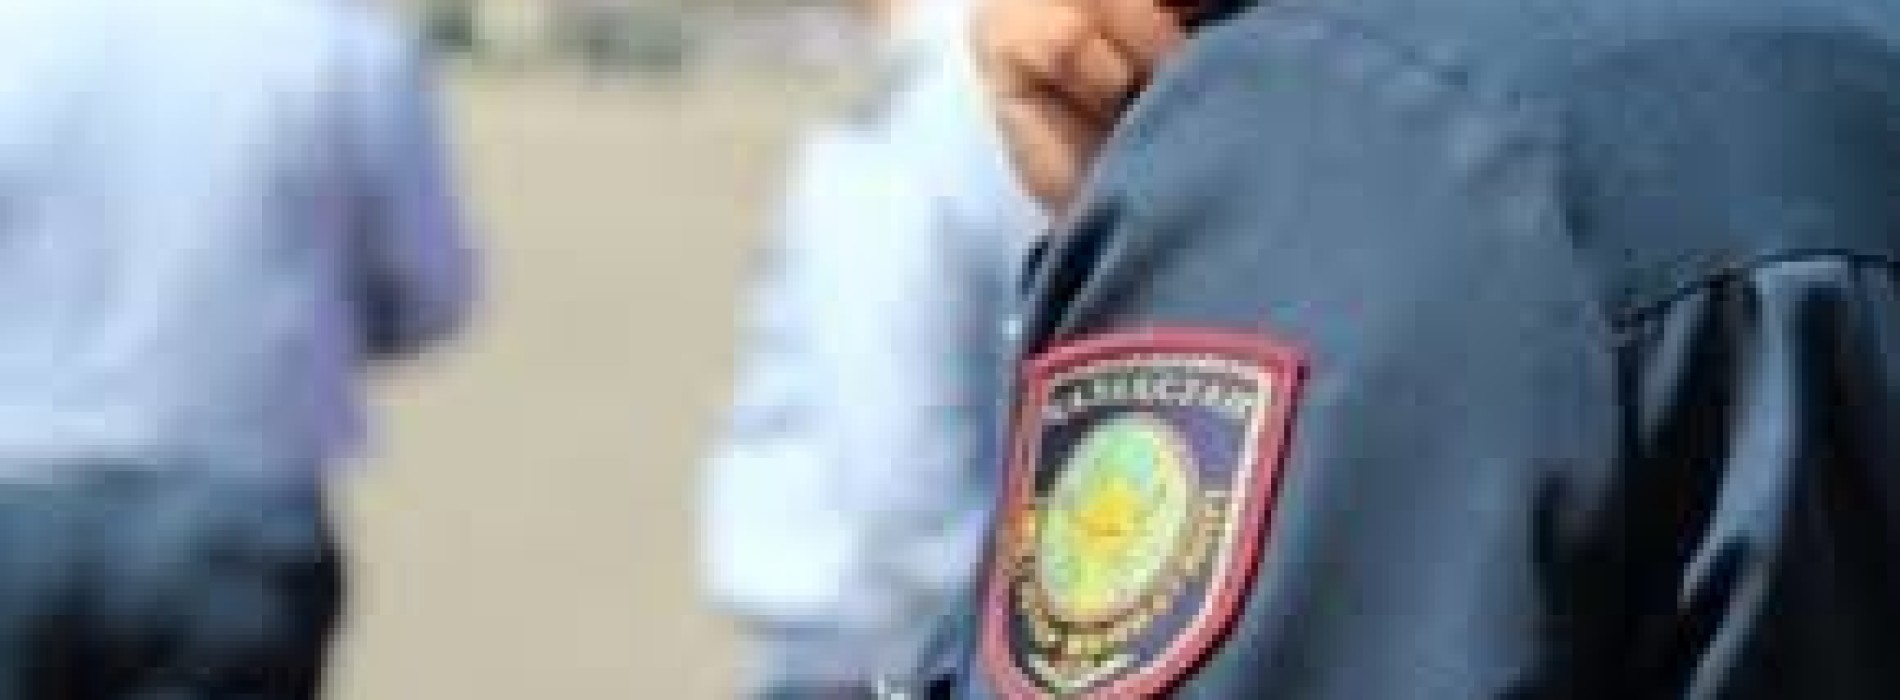 В Костанае полицейский обвиняется в покровительстве ОПГ